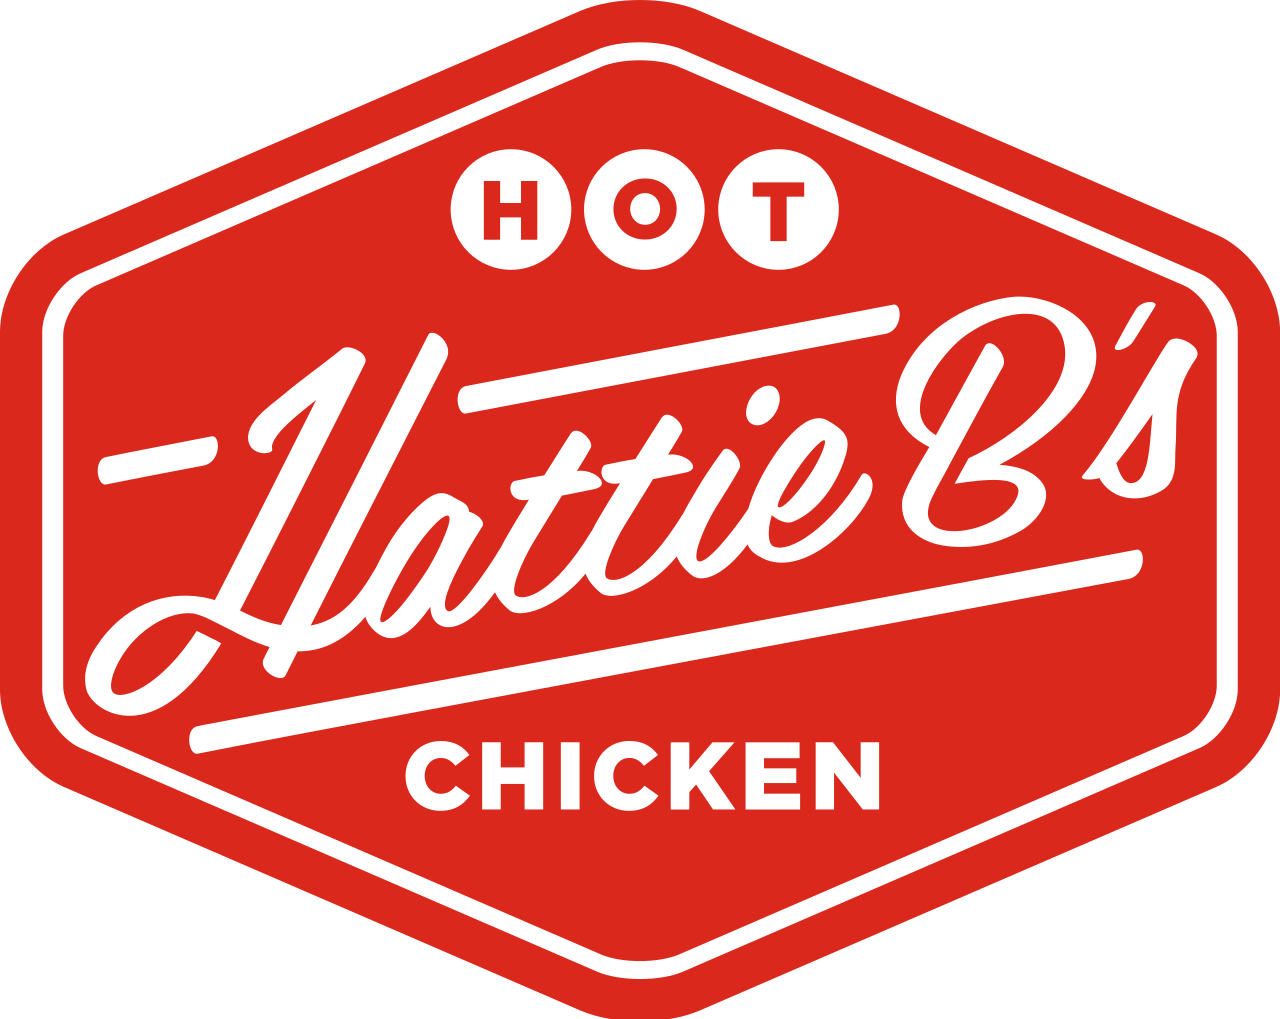 1280px-Hattie_B's_Hot_Chicken_logo.svg.png